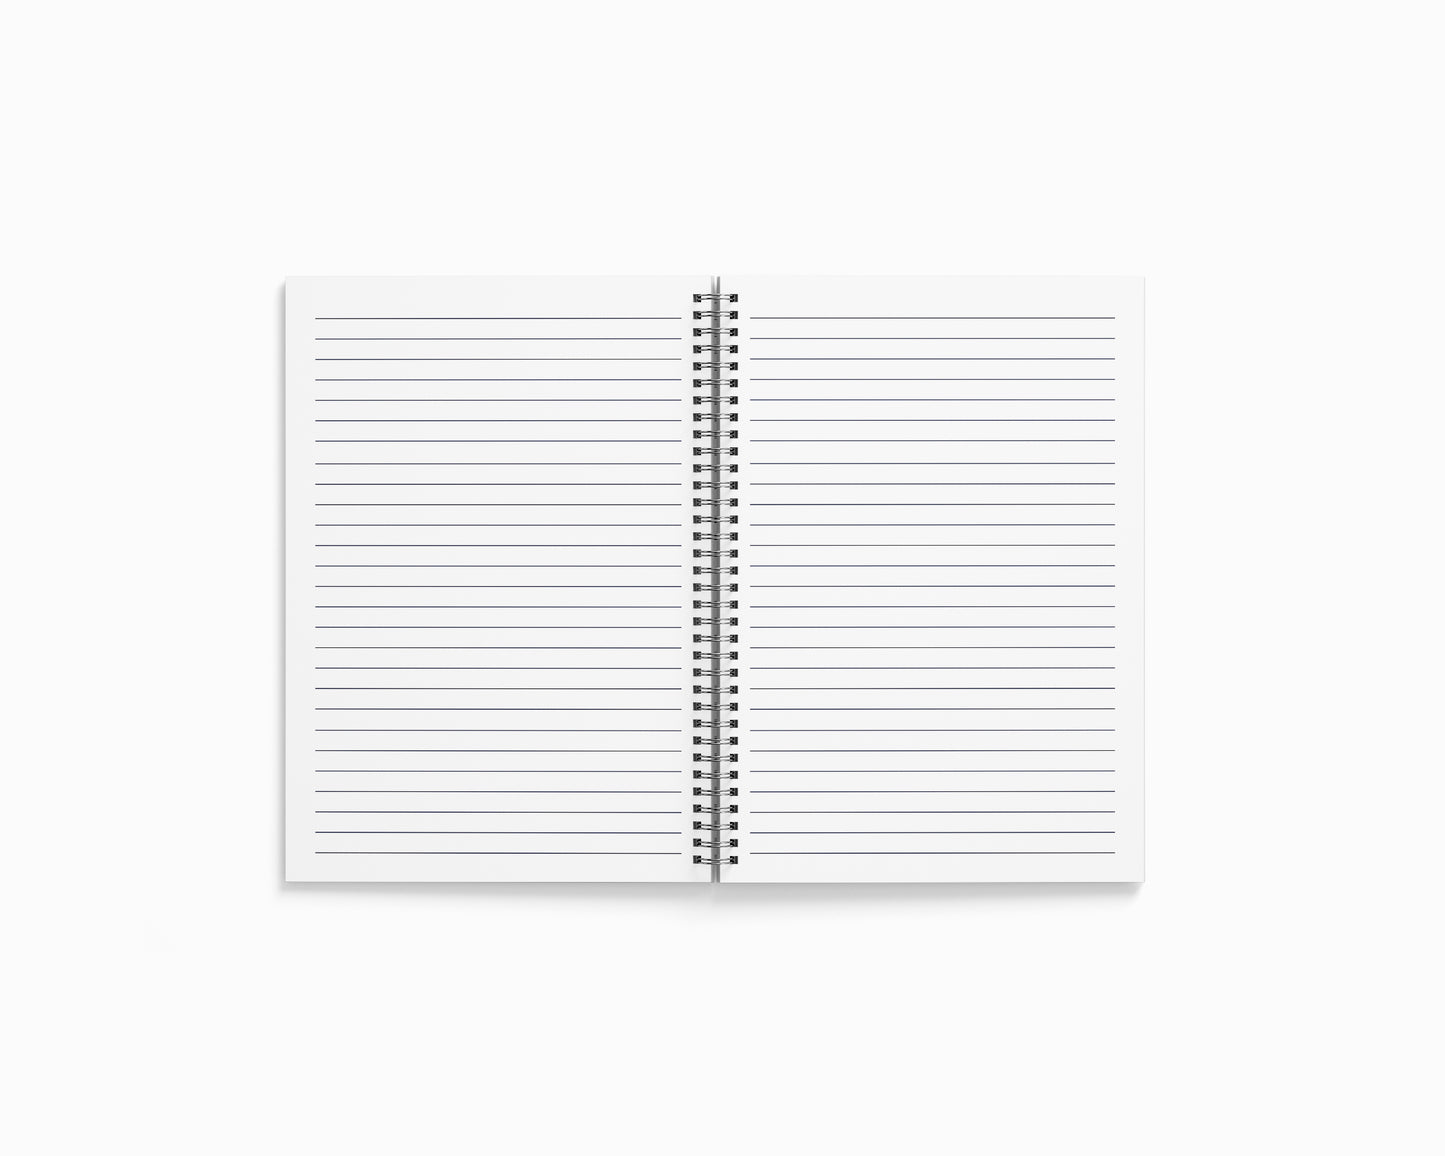 Chinnakkampalayam Notebook (A5 Size, 100 Pages, Ruled)